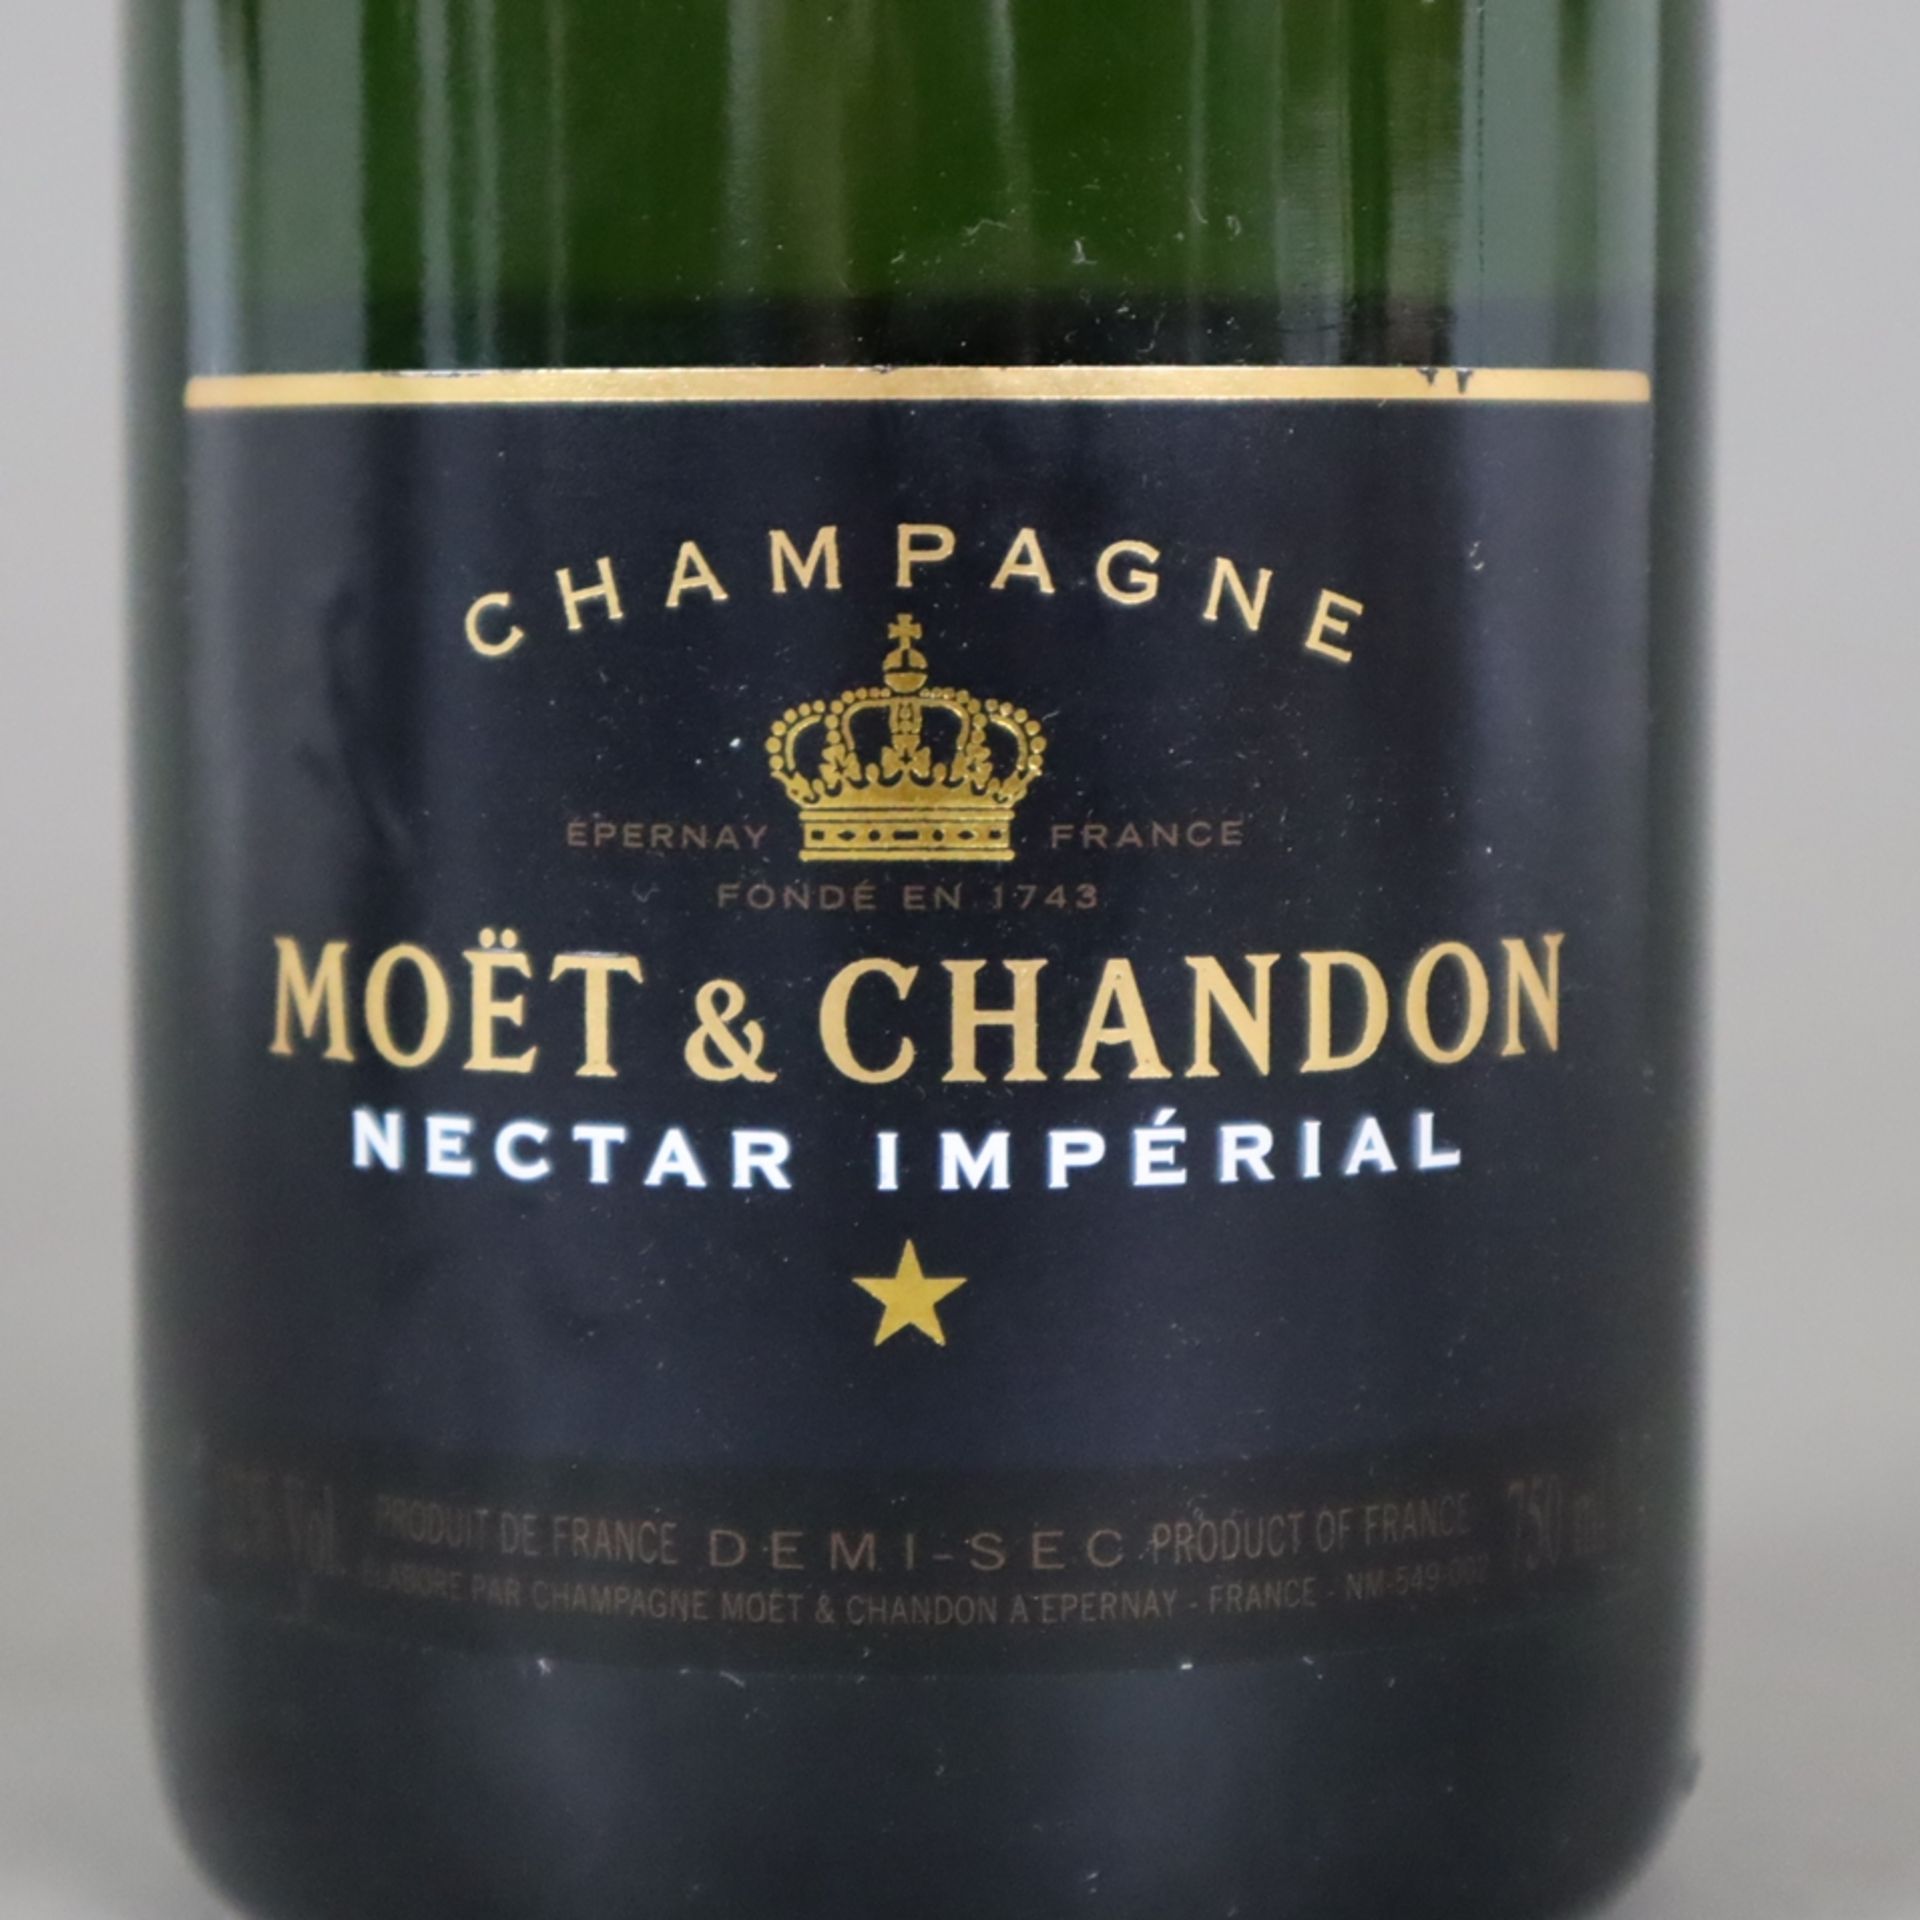 Champagner-Konvolut - 2 Flaschen, Moët & Chandon, Nectar Impérial, je 0,75 Liter - Image 3 of 4